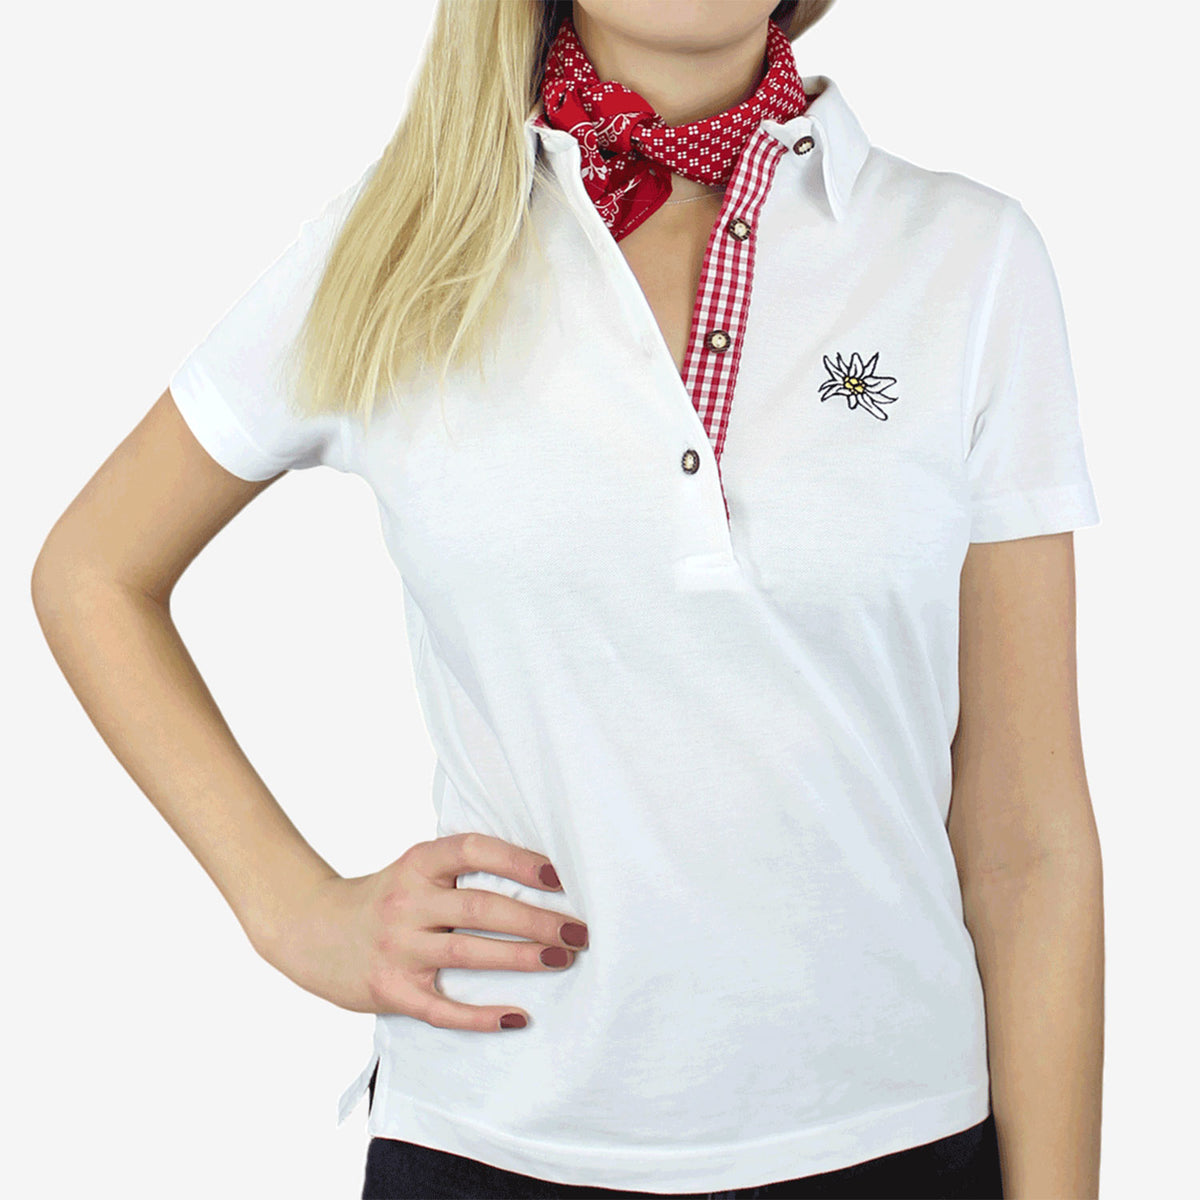 Österreich Edelweiss Trachtenpolo Shirt Damen Hoamatkult kaufen #Farbe_Weiss-Rot-Kariert